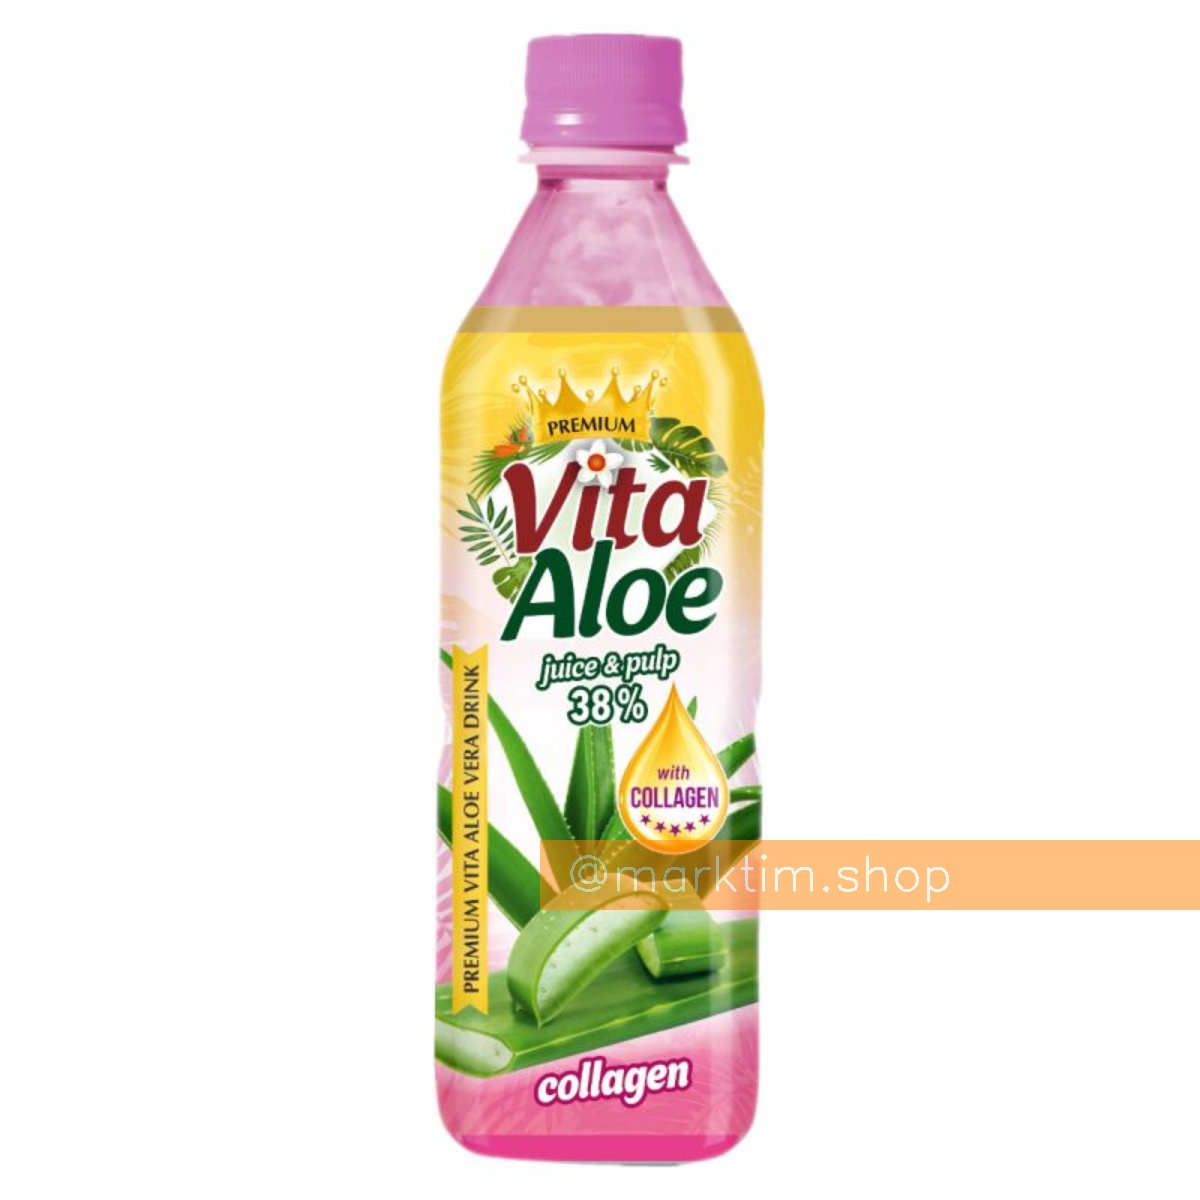 Алоэ-напиток с соком и мякотью 38% с коллагеном VITA ALOE (500 мл)